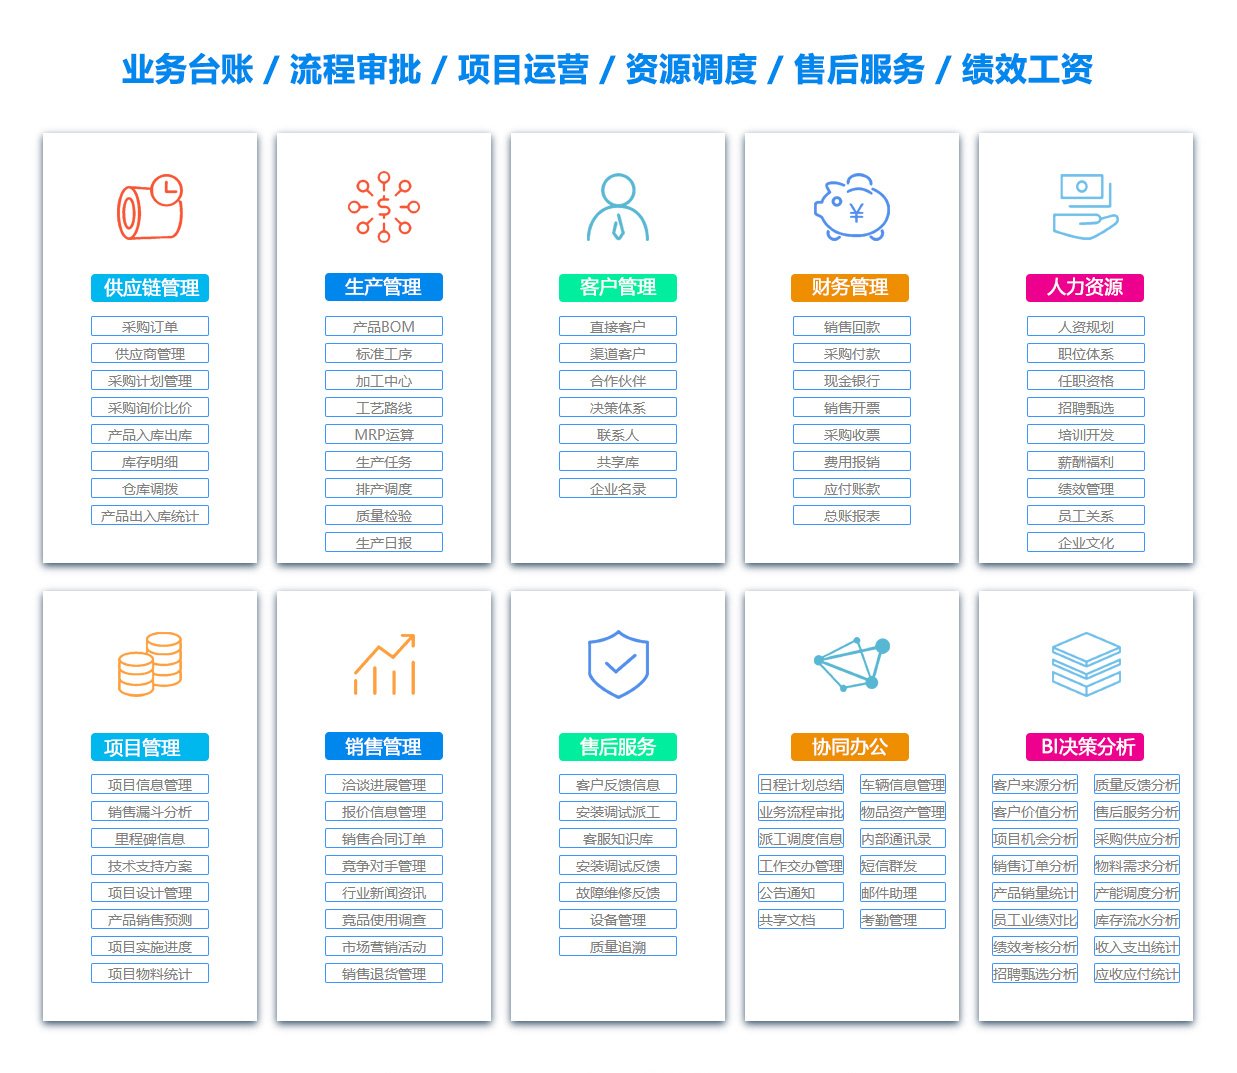 惠州MIS:信息管理系统